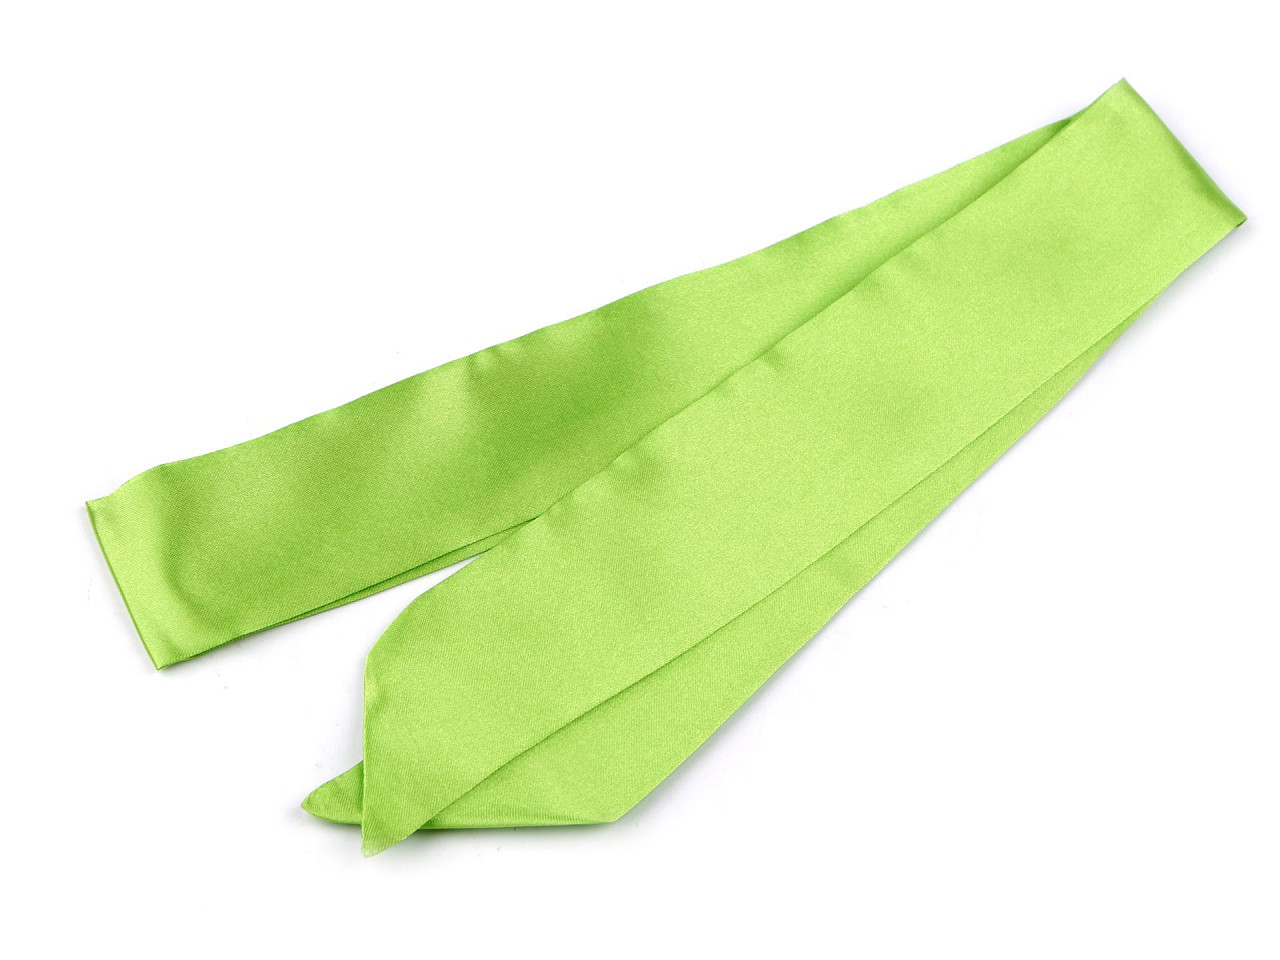 Šátek úzký do vlasů, na krk, na kabelku jednobarevný, s květy, barva 6 zelená sv.